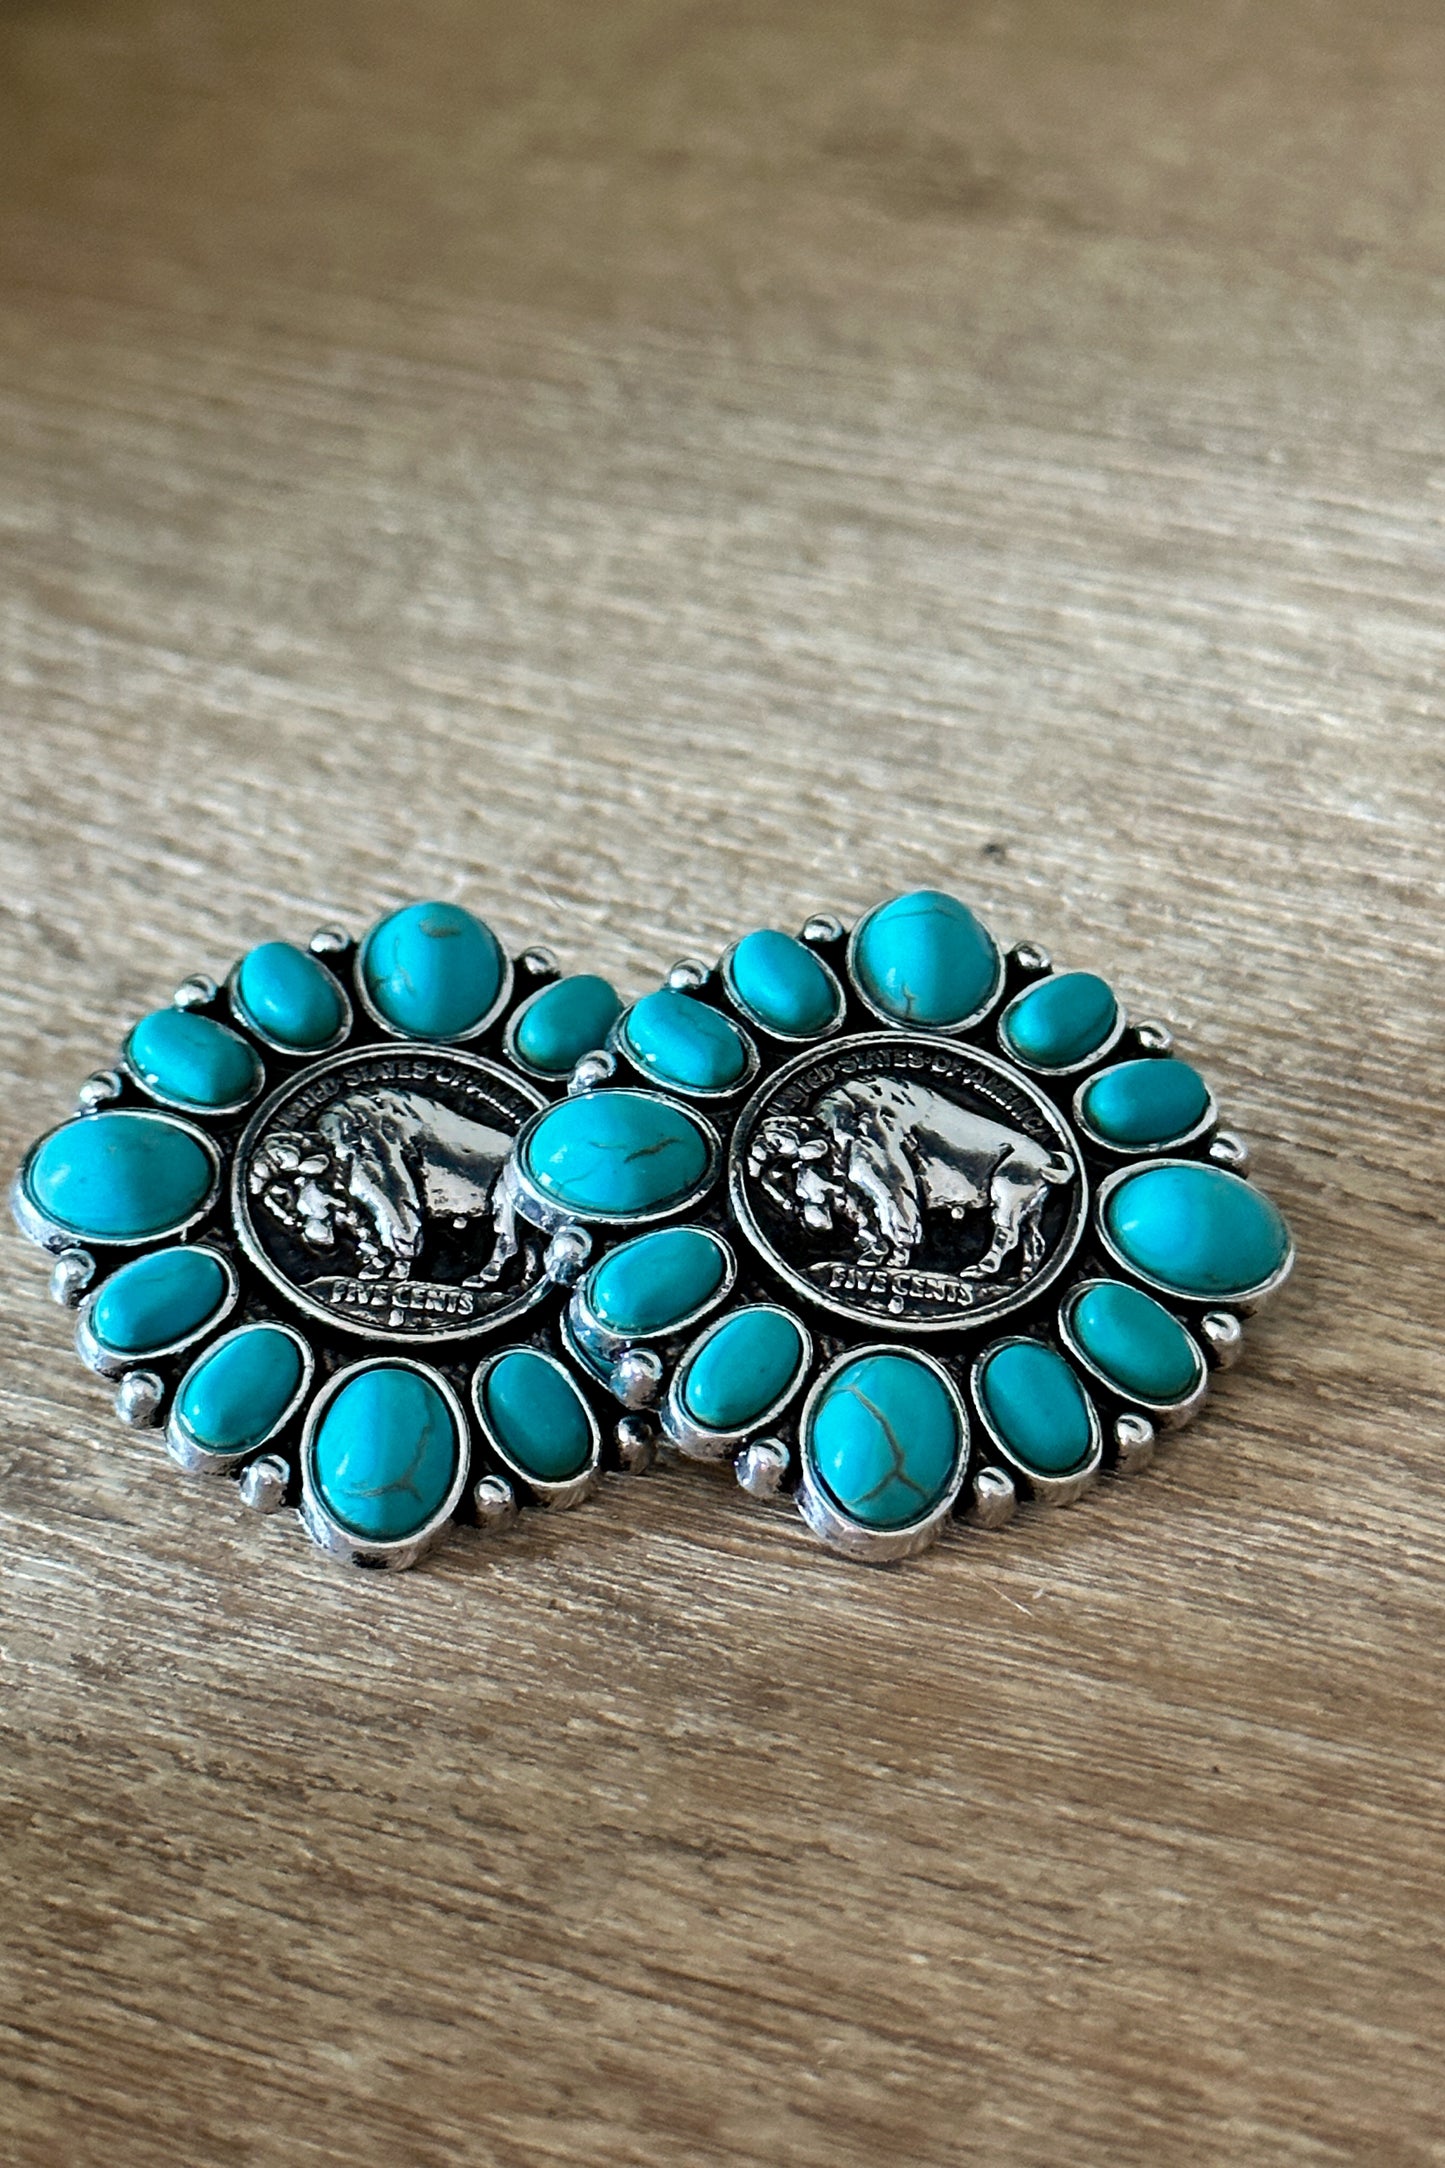 Western American Buffalo Silver Dollar Earrings - Middle West Apparel